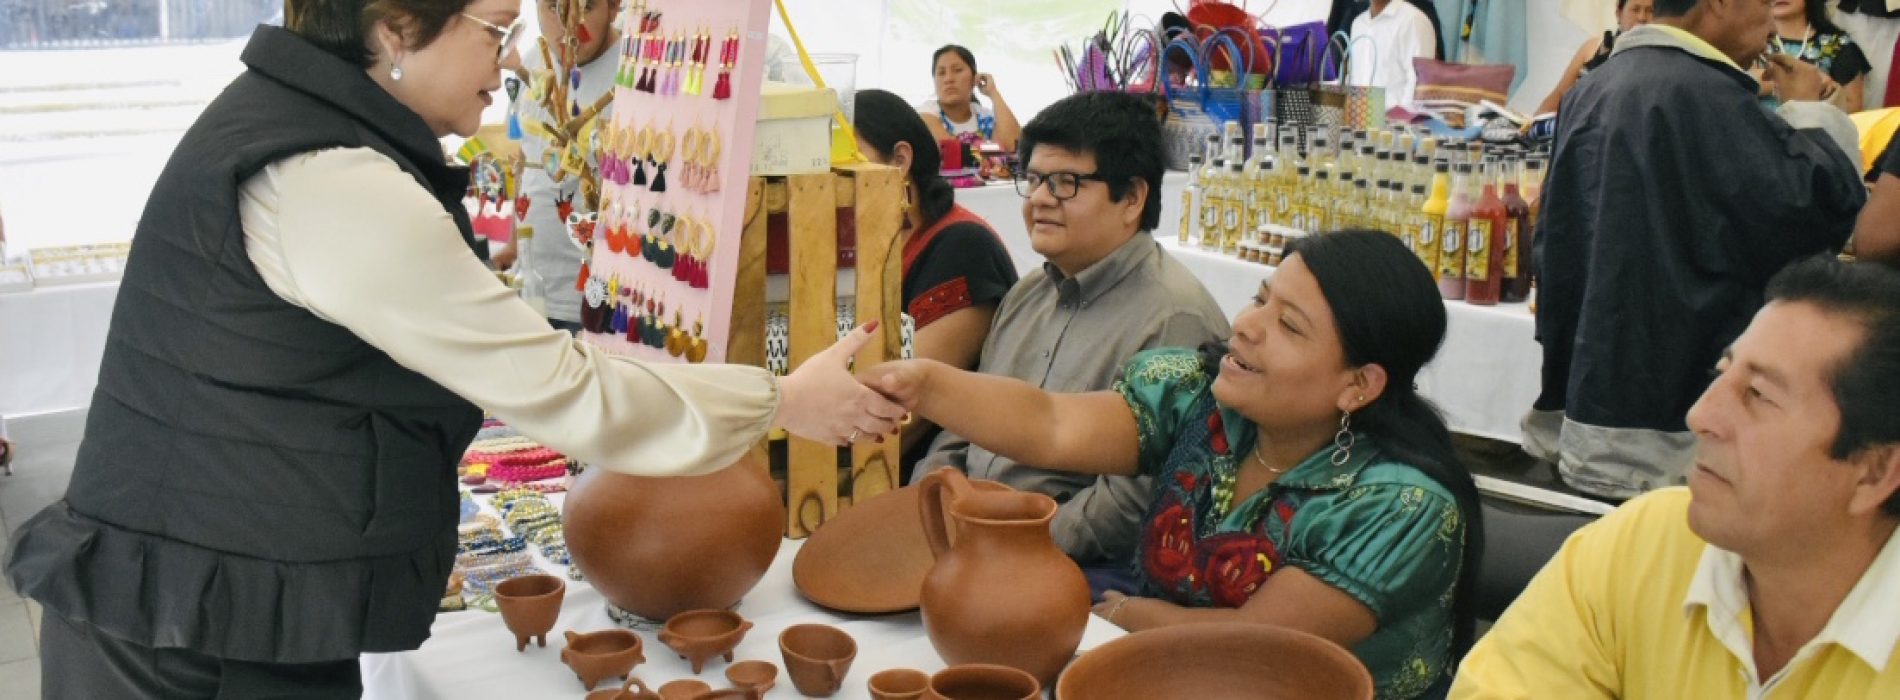 Aprobada iniciativa de Aurora López Acevedo para mejorar comercialización y exportación de artesanías oaxaqueñas